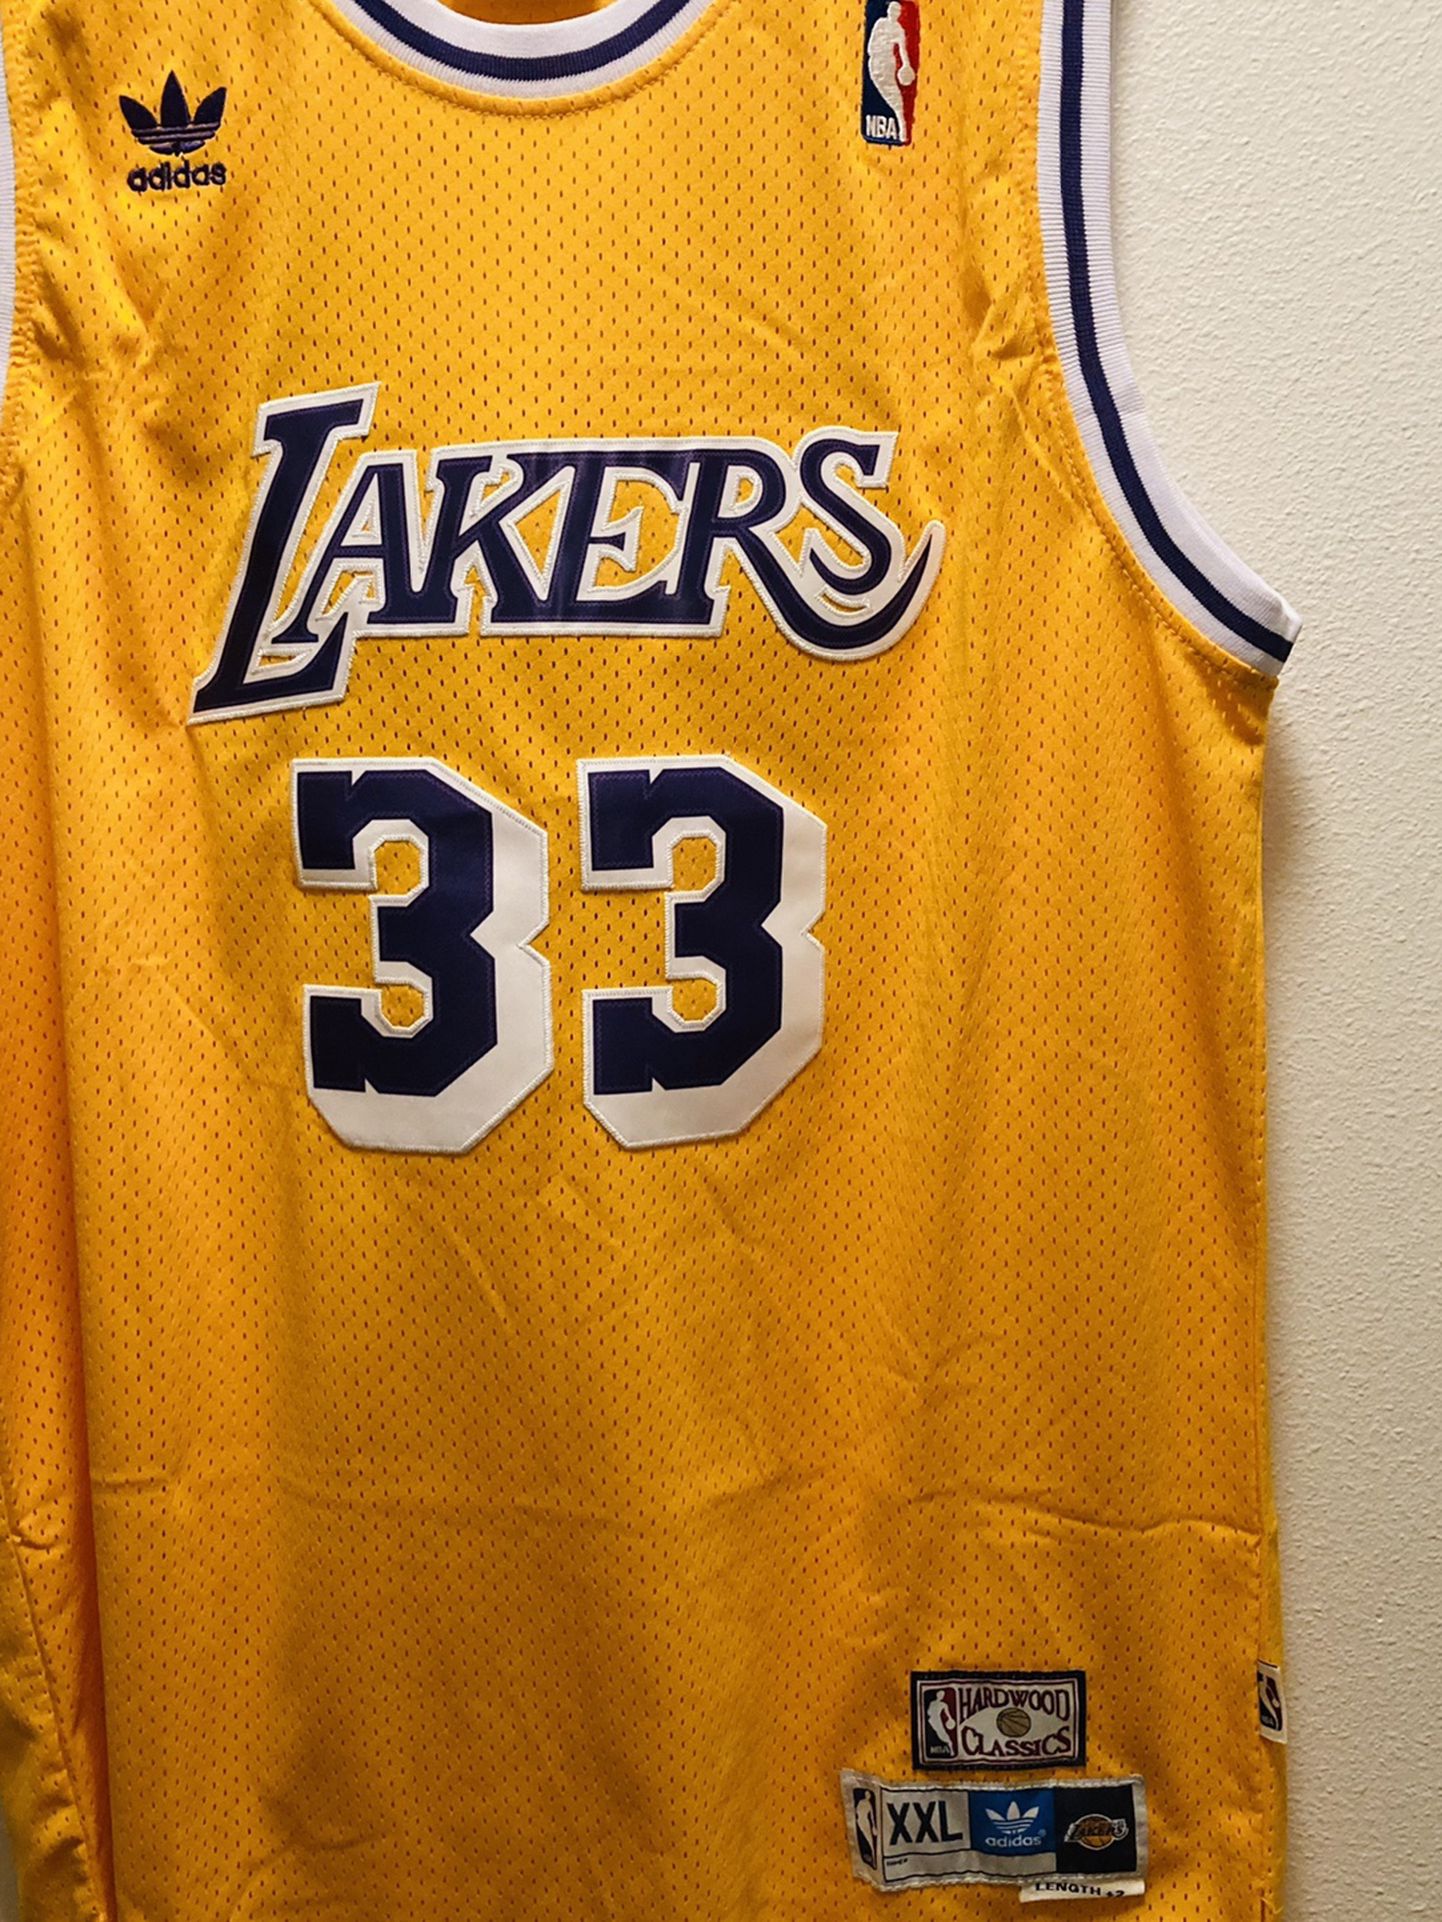 Lakers Basketball Jersey Stitched